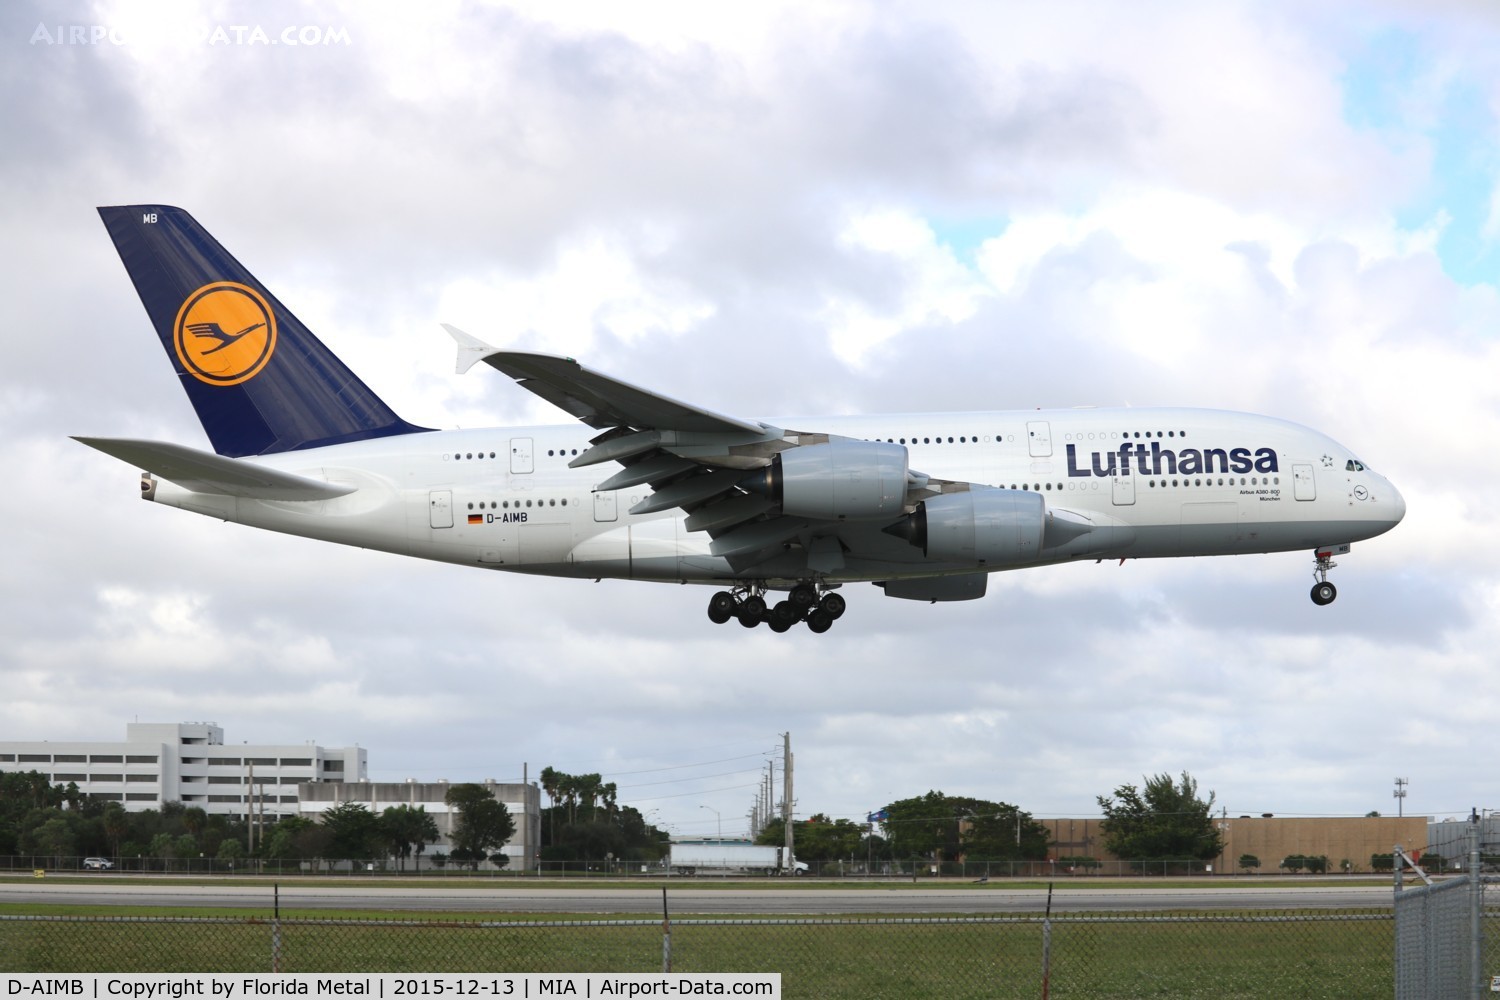 D-AIMB, 2010 Airbus A380-841 C/N 041, Lufthansa